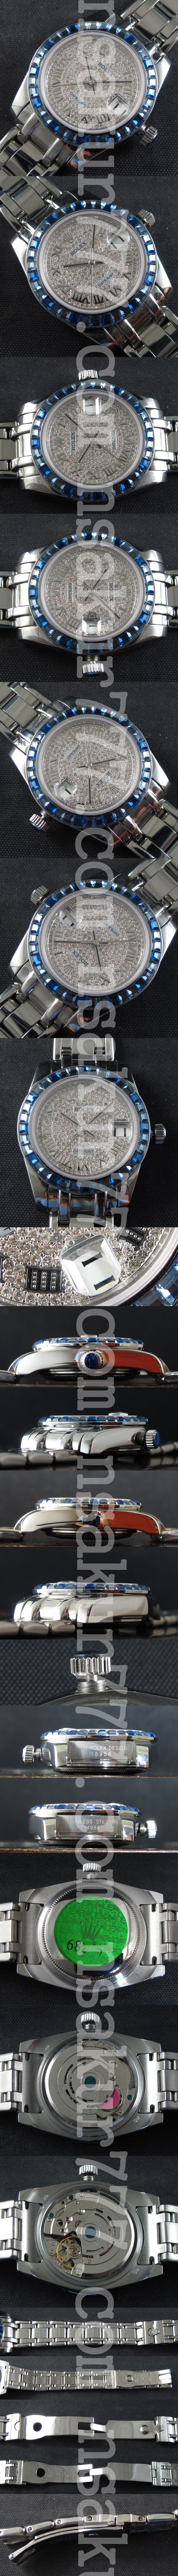 レプリカ時計ロレックスデイトジャストII ミディアム、 Asian 21600振動 - ウインドウを閉じる